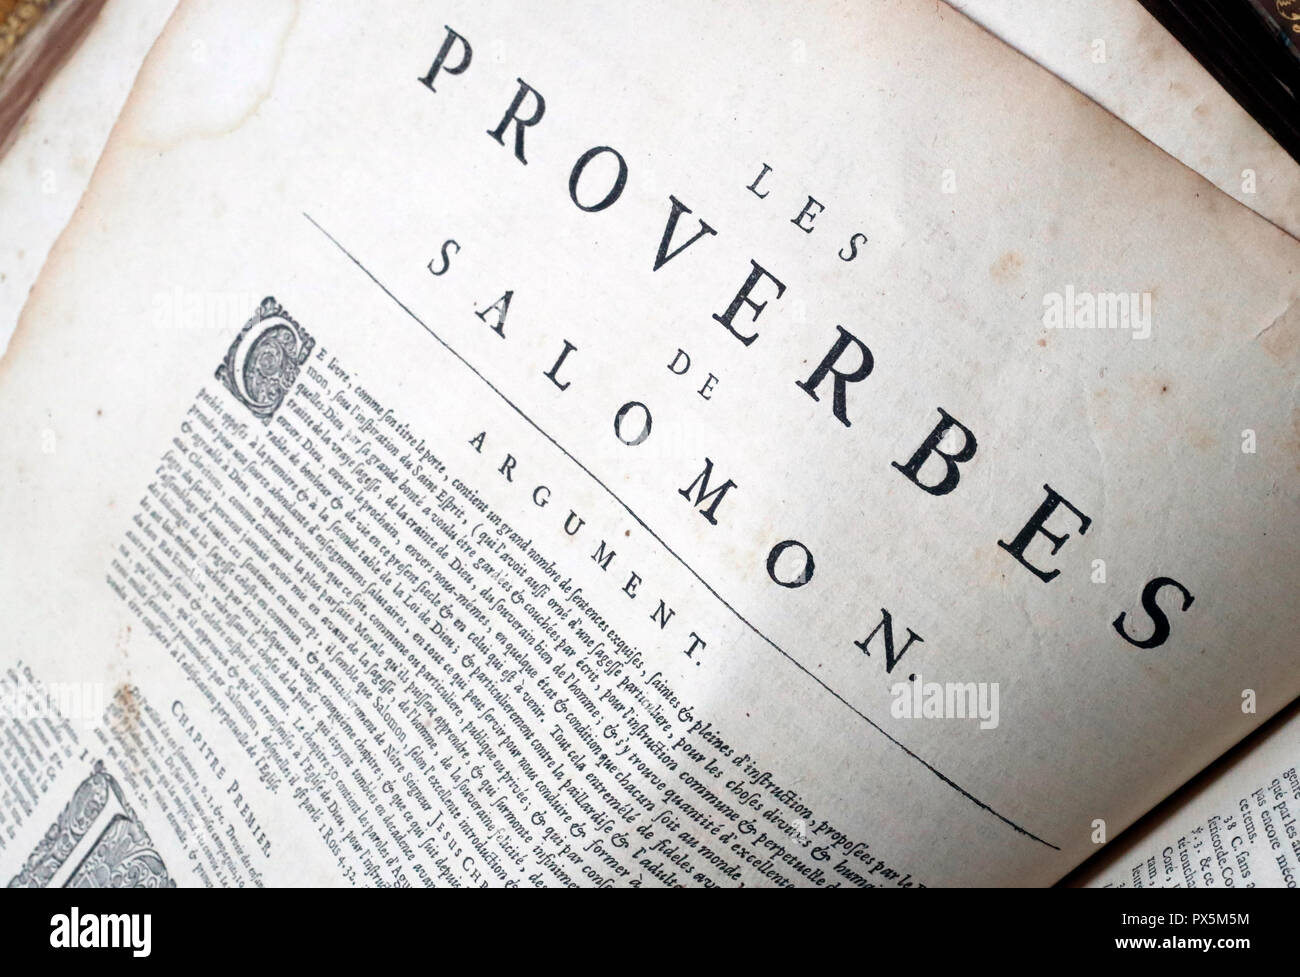 RÃ©sultat de recherche d'images pour "bible Proverbes"